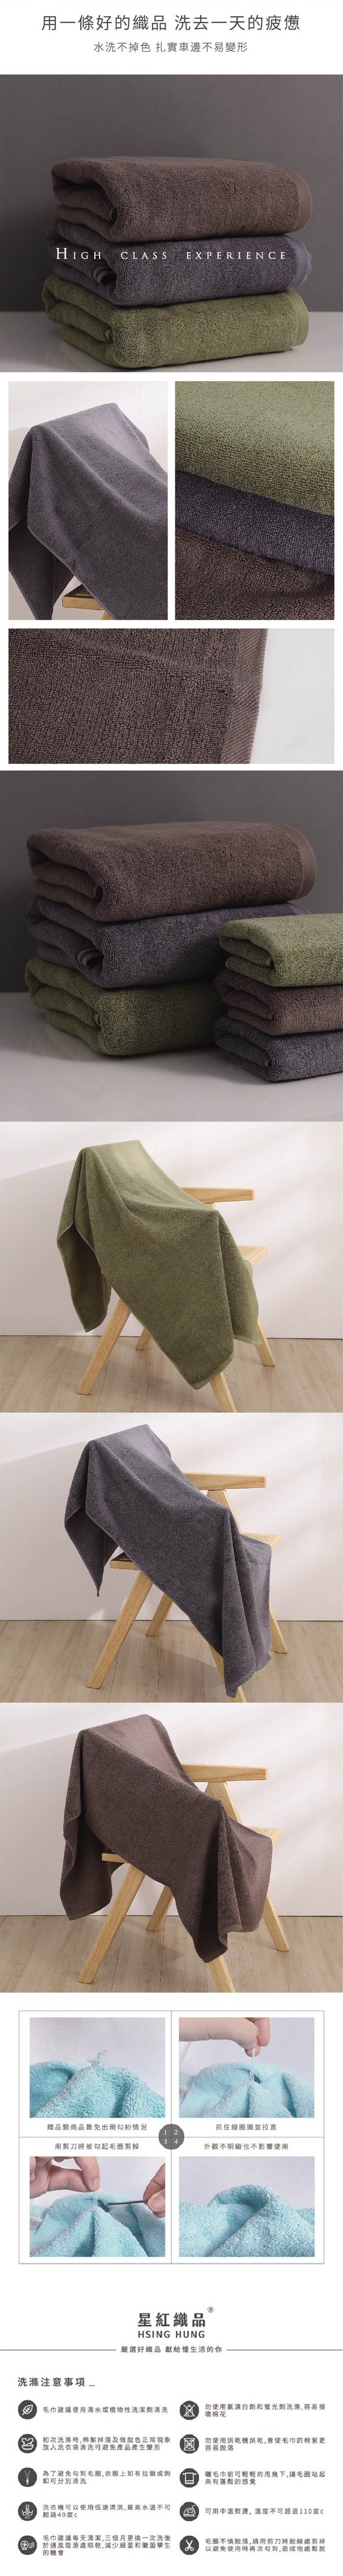 星紅織品 日式沉穩深色純棉浴巾-2入組(咖啡色/深灰色/墨綠